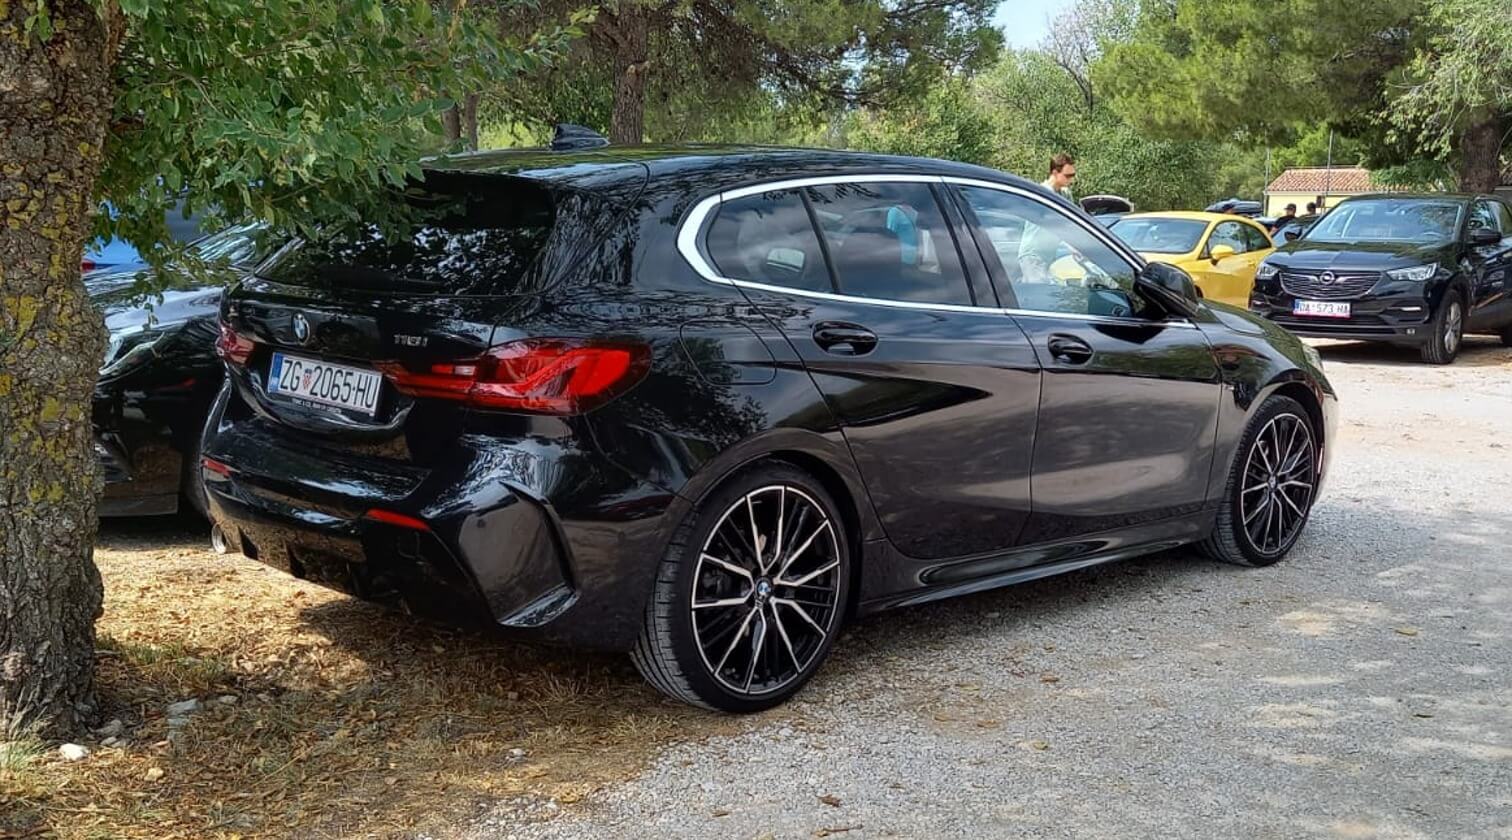 BMW-styling-552m-m-sport-pakket-black-zwart-oem-style-wheels-styling